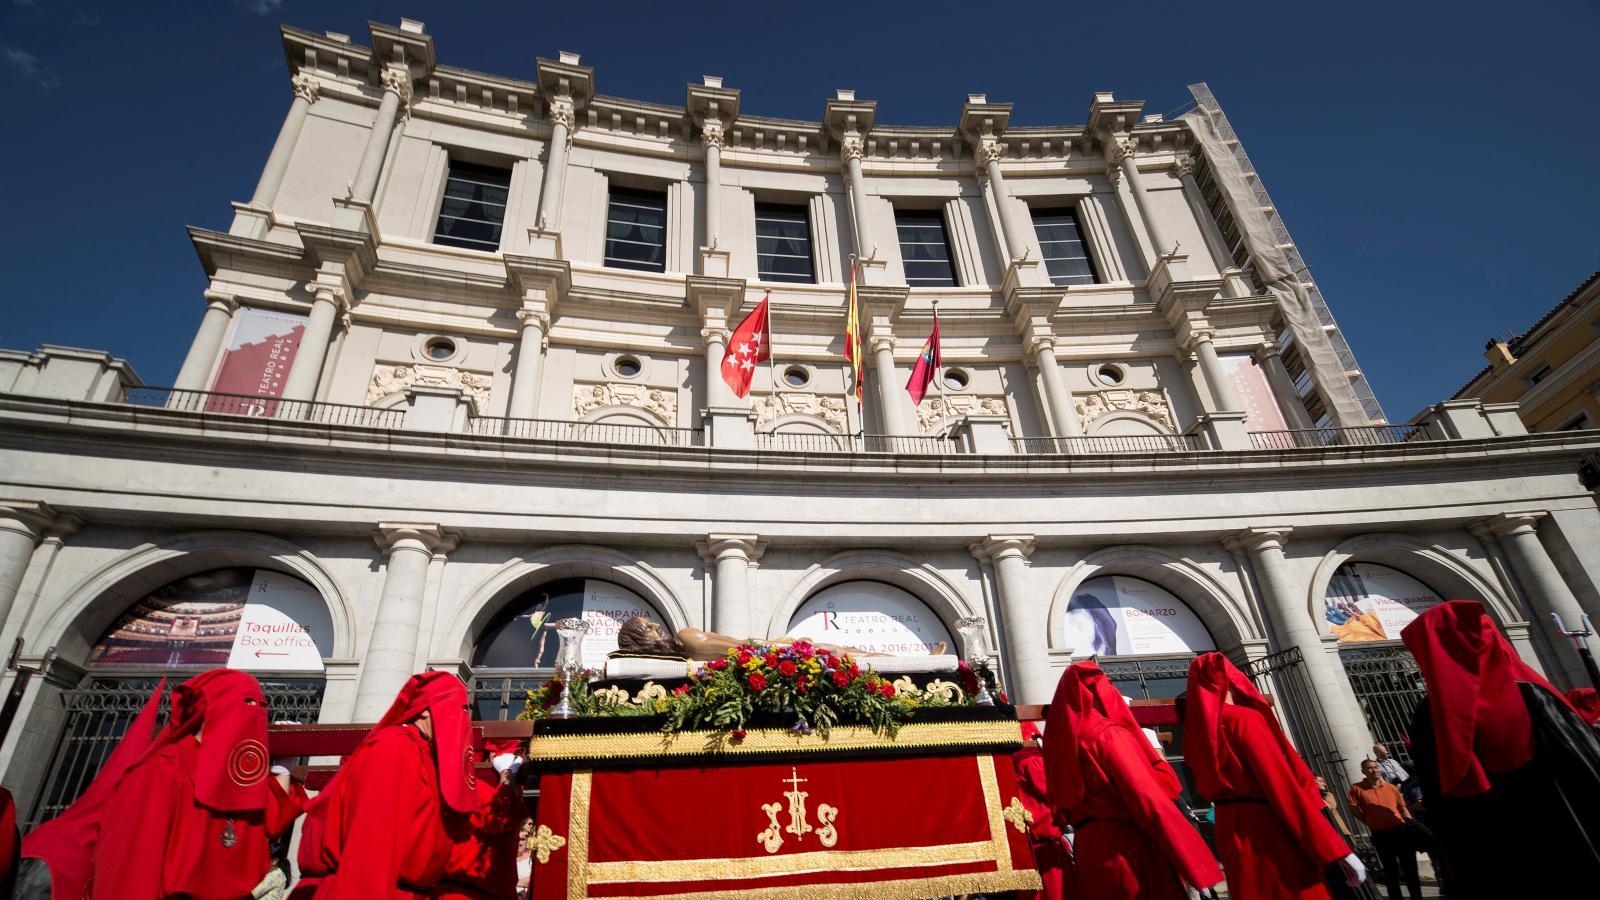 Madrid se prepara para una Semana Santa llena de actividades culturales y religiosas